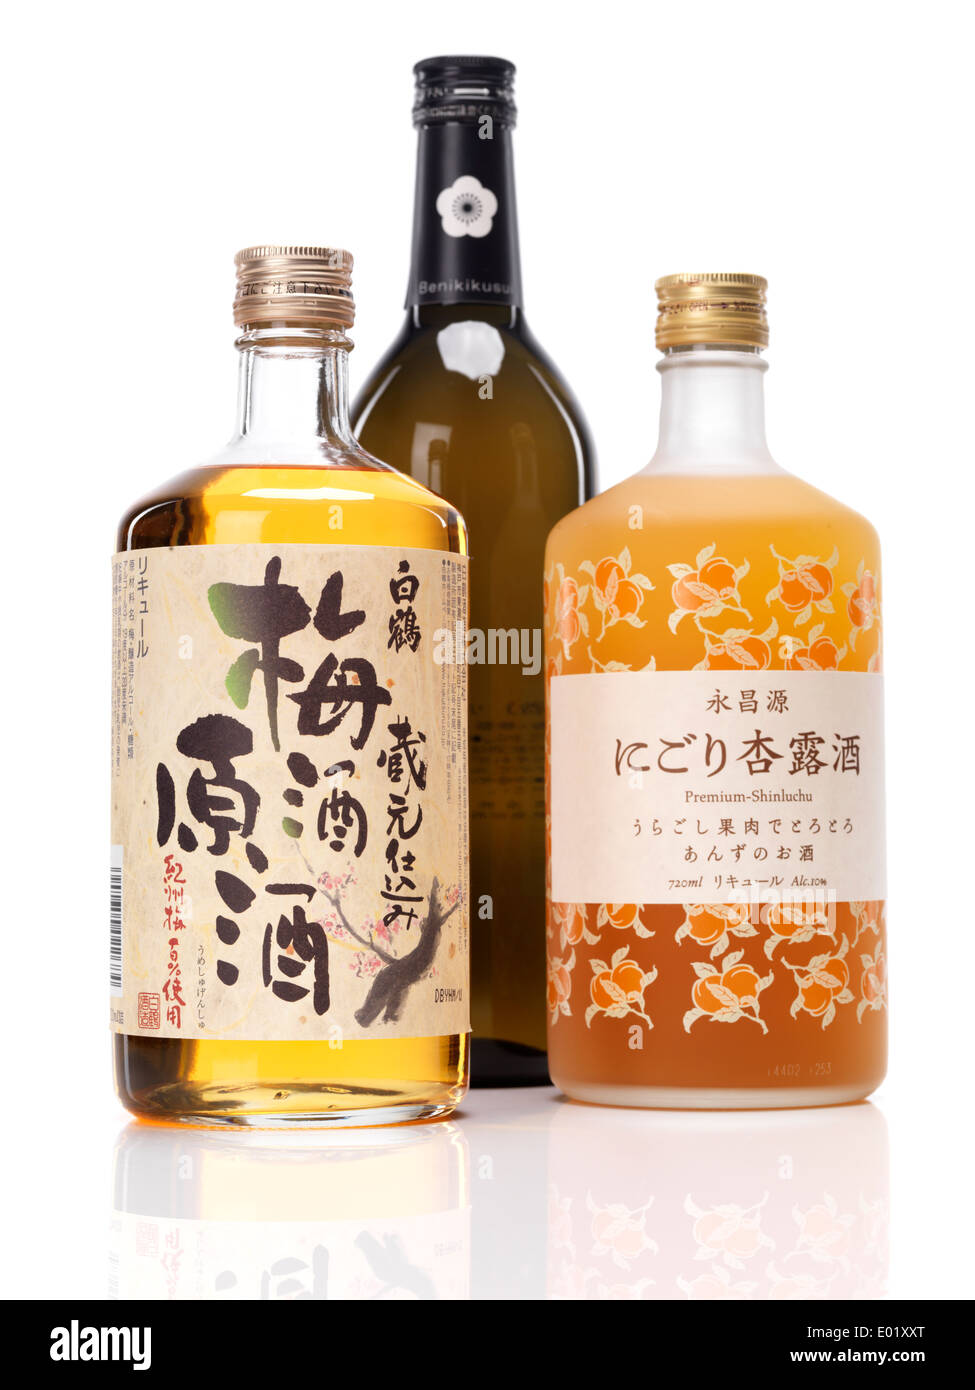 Dolce giapponese sake bottiglie, la gru bianca il vino di prugne